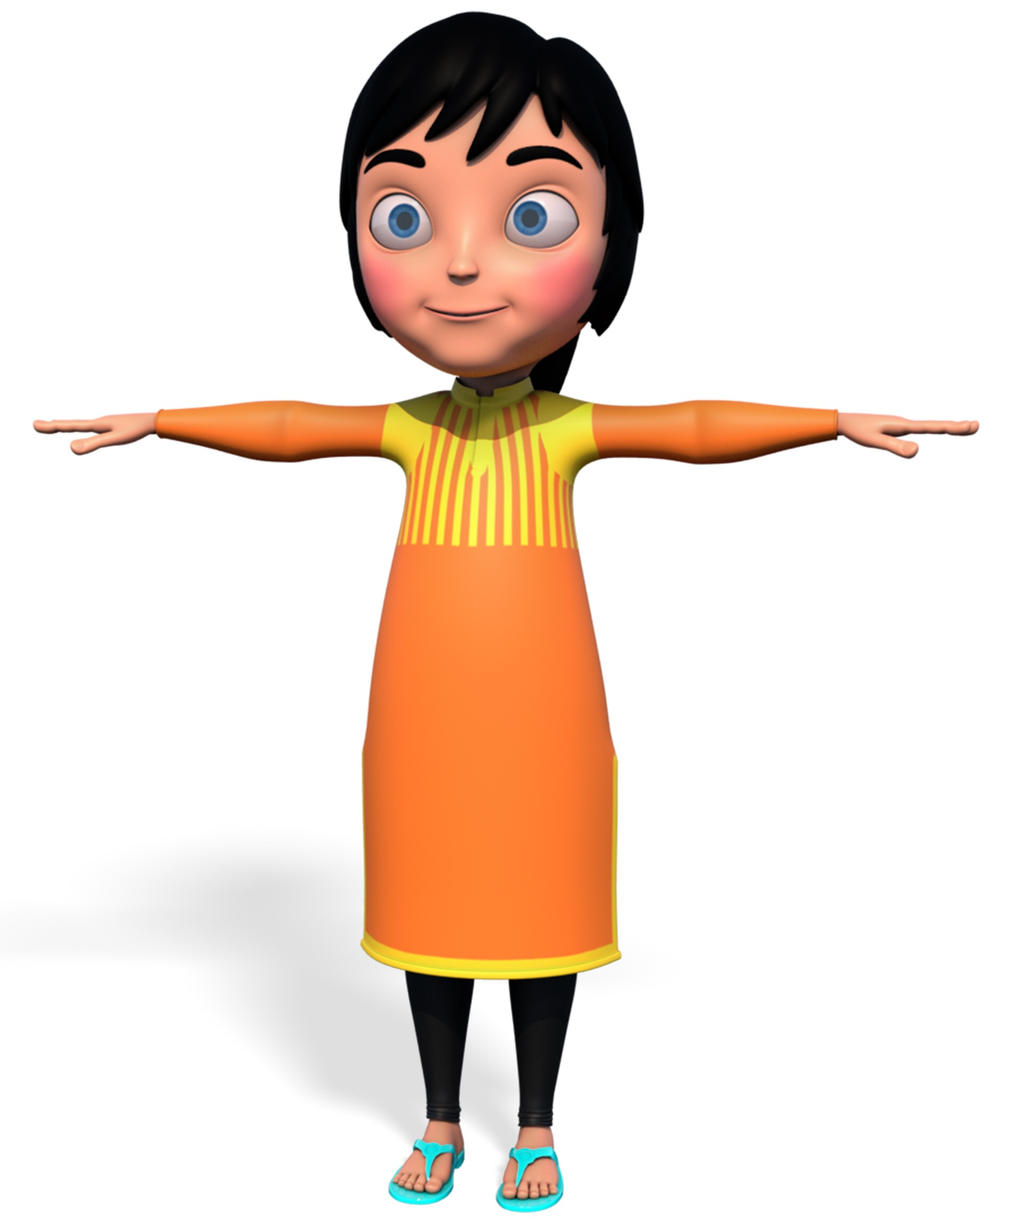 Cartoon character Indian 3D model by sammosim on DeviantArt